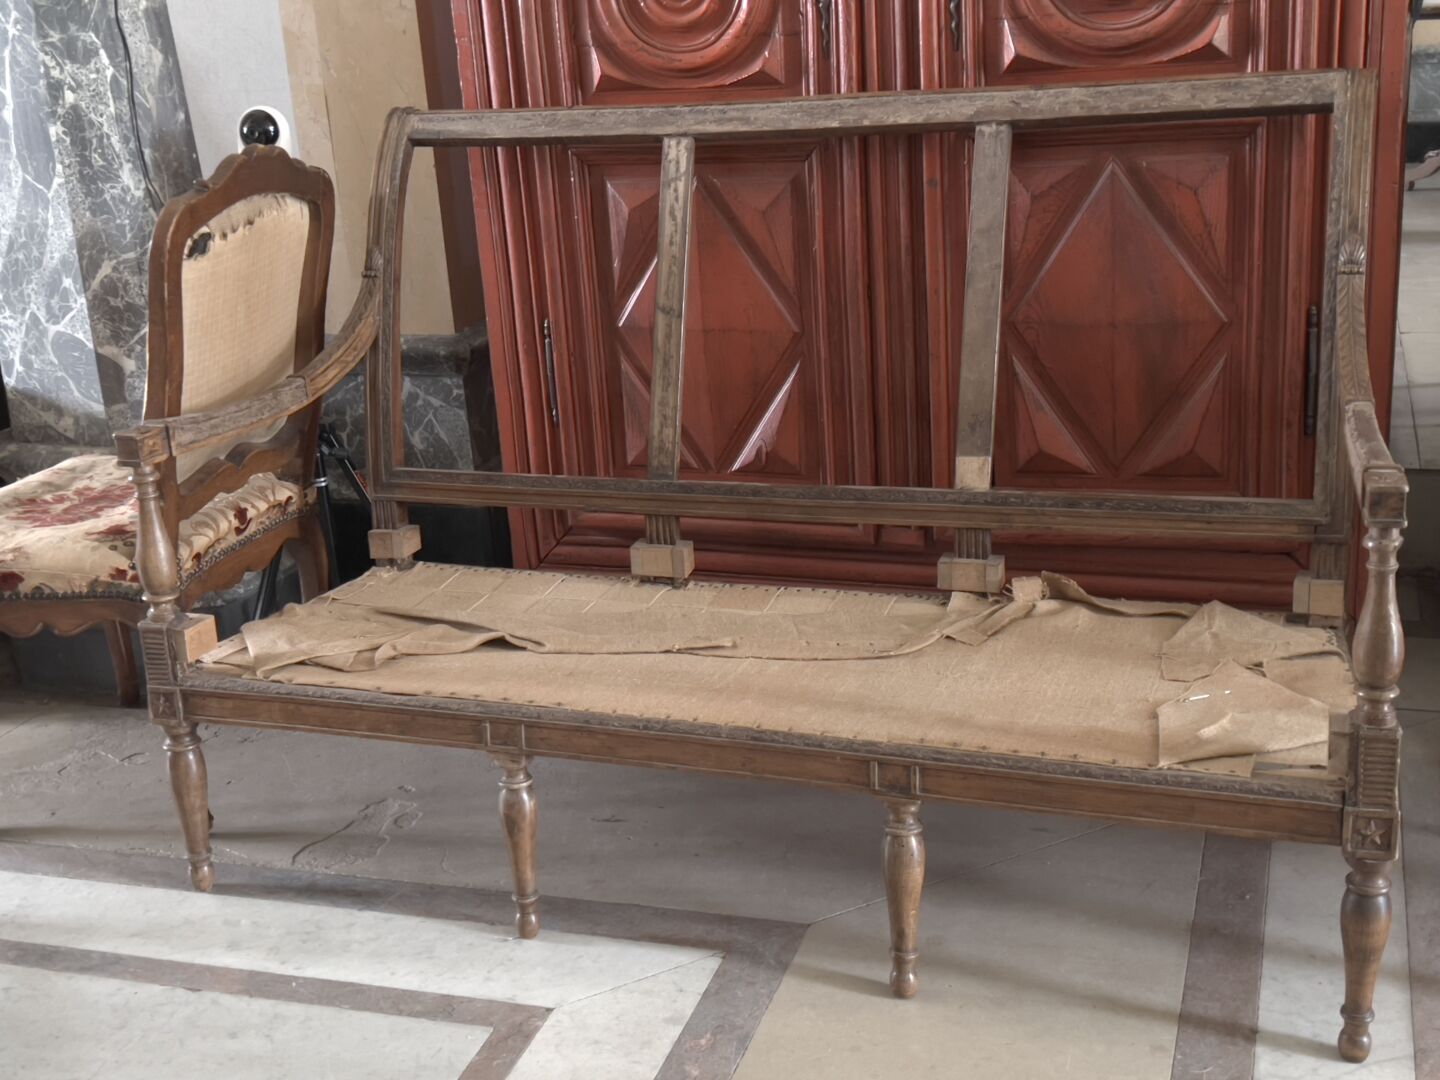 Null Directoire风格的模制和雕刻的木制沙发。

有一个反转的靠背，栏杆式扶手，它靠在栏杆式的脚上，前面是环，后面是马刀。 

装饰有星星和棕榈花
&hellip;